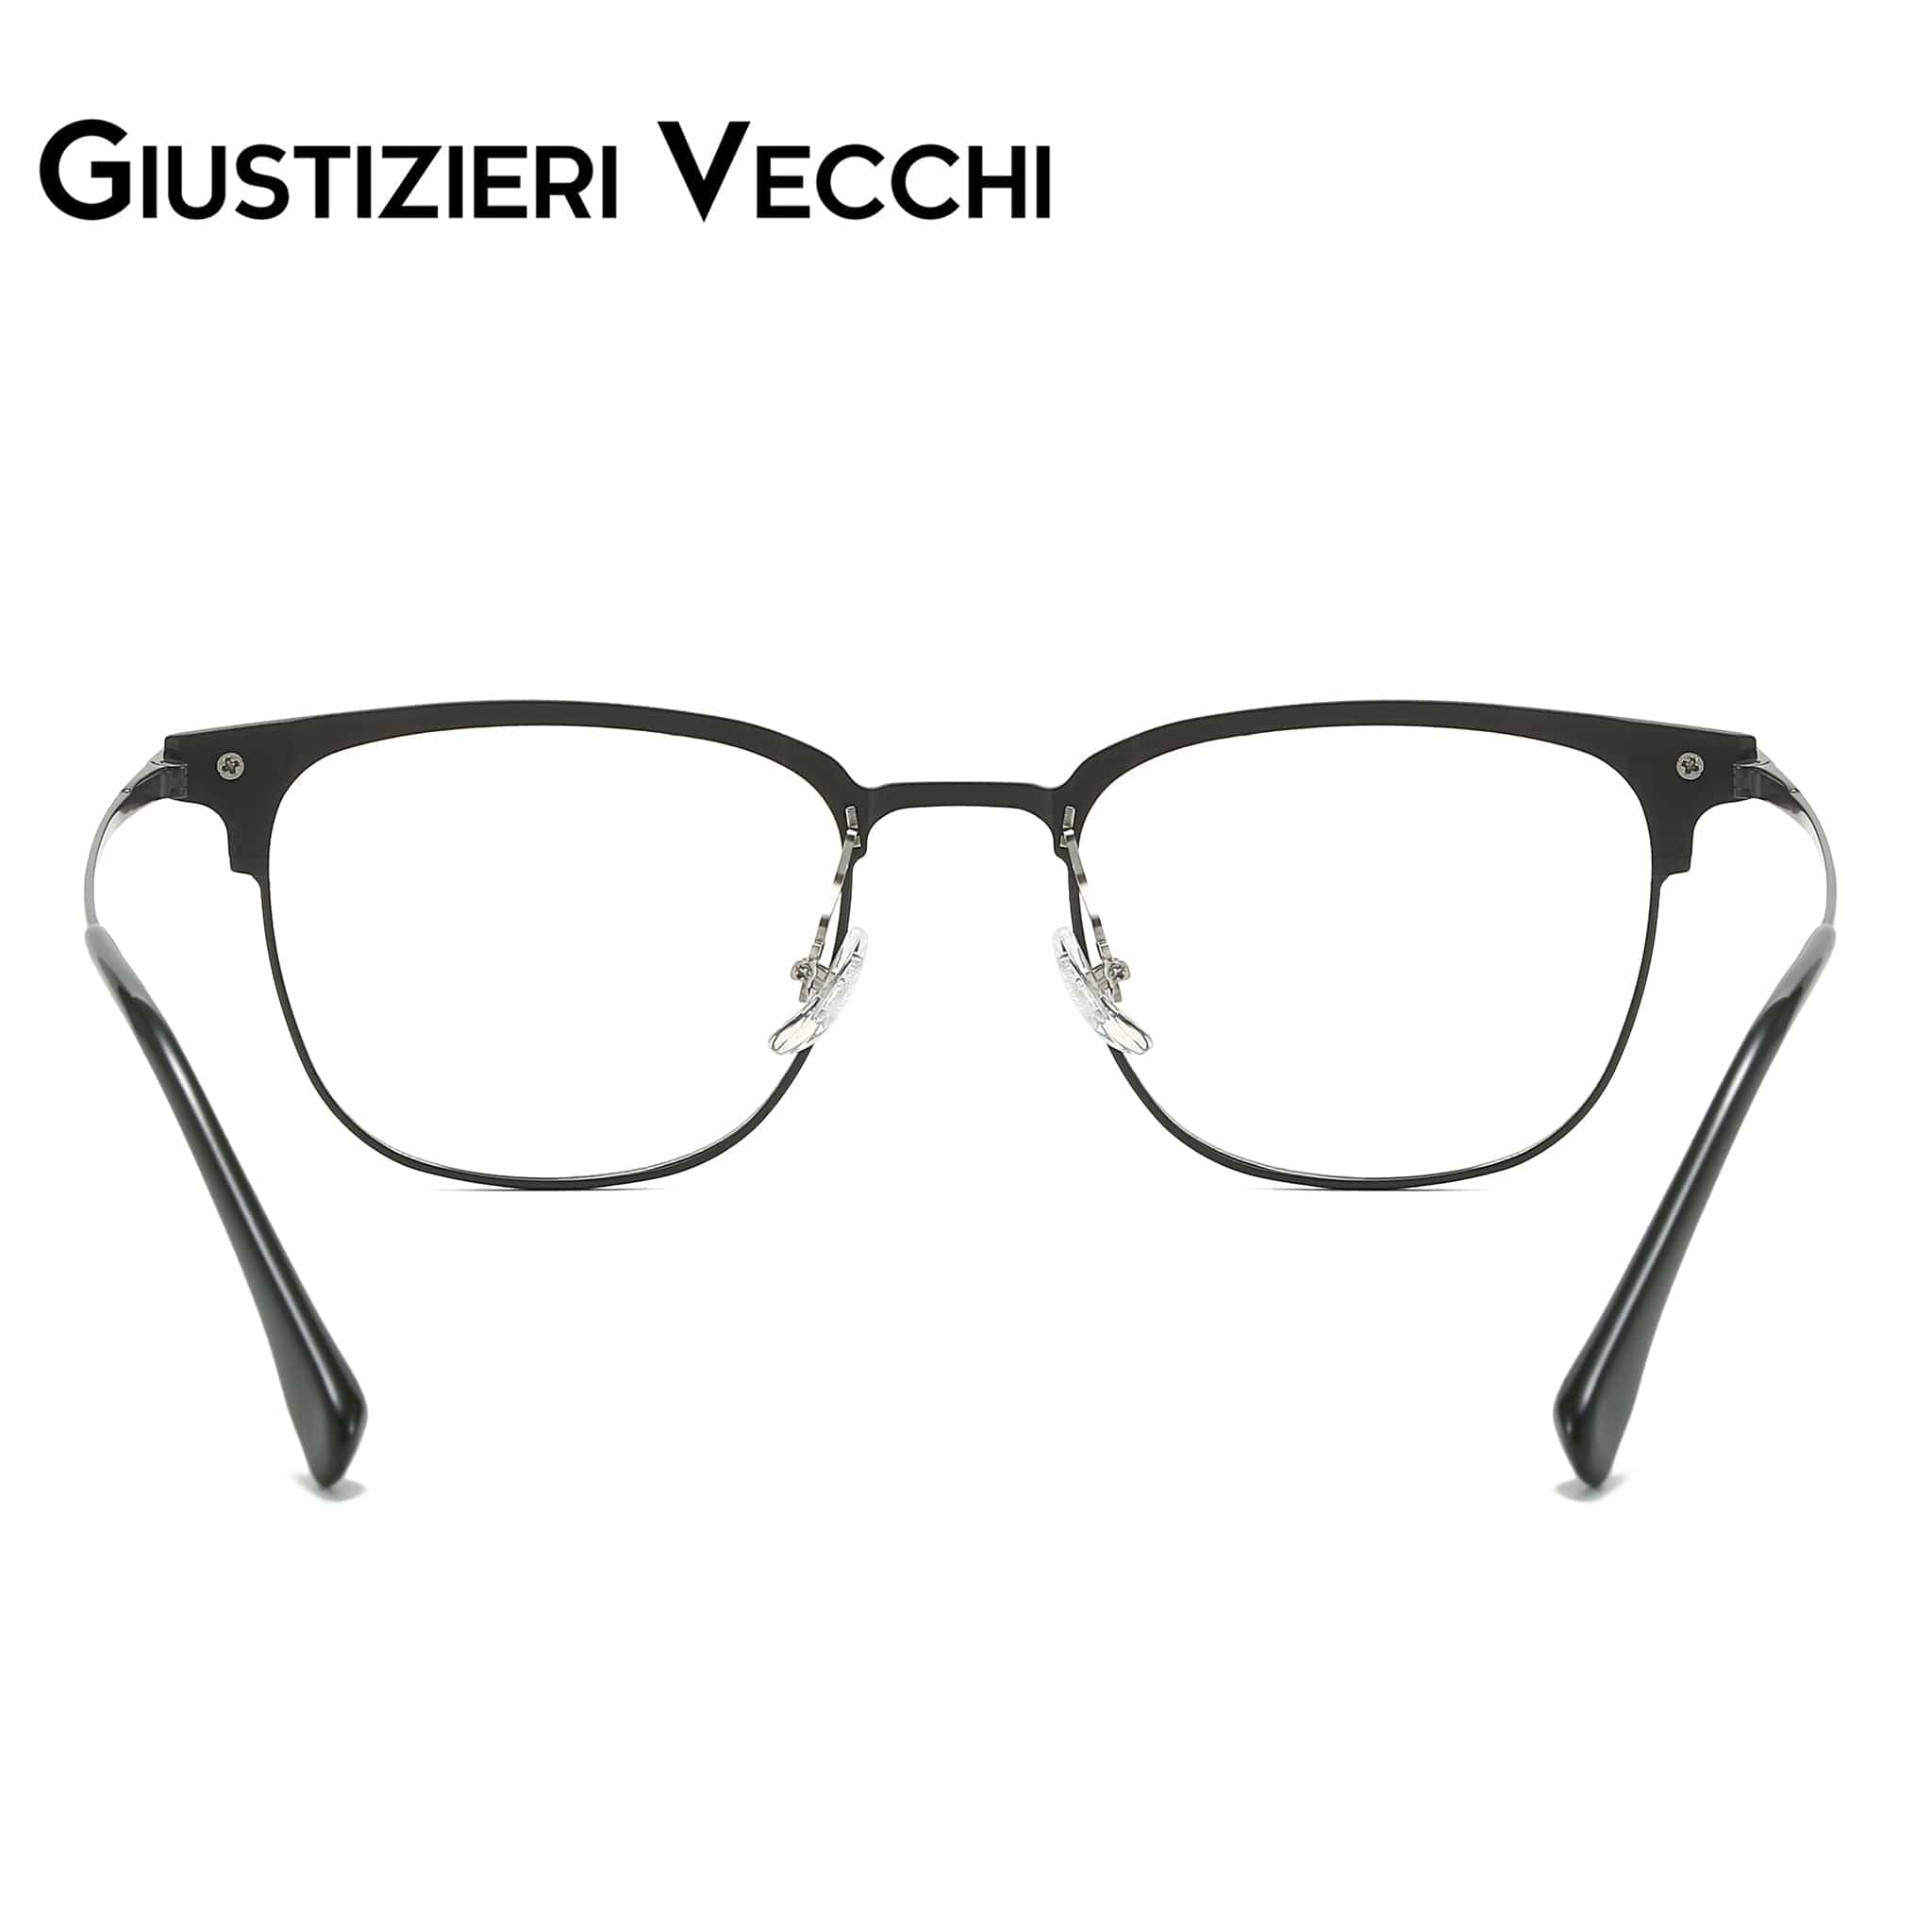 GIUSTIZIERI VECCHI Eyeglasses FireRush Uno